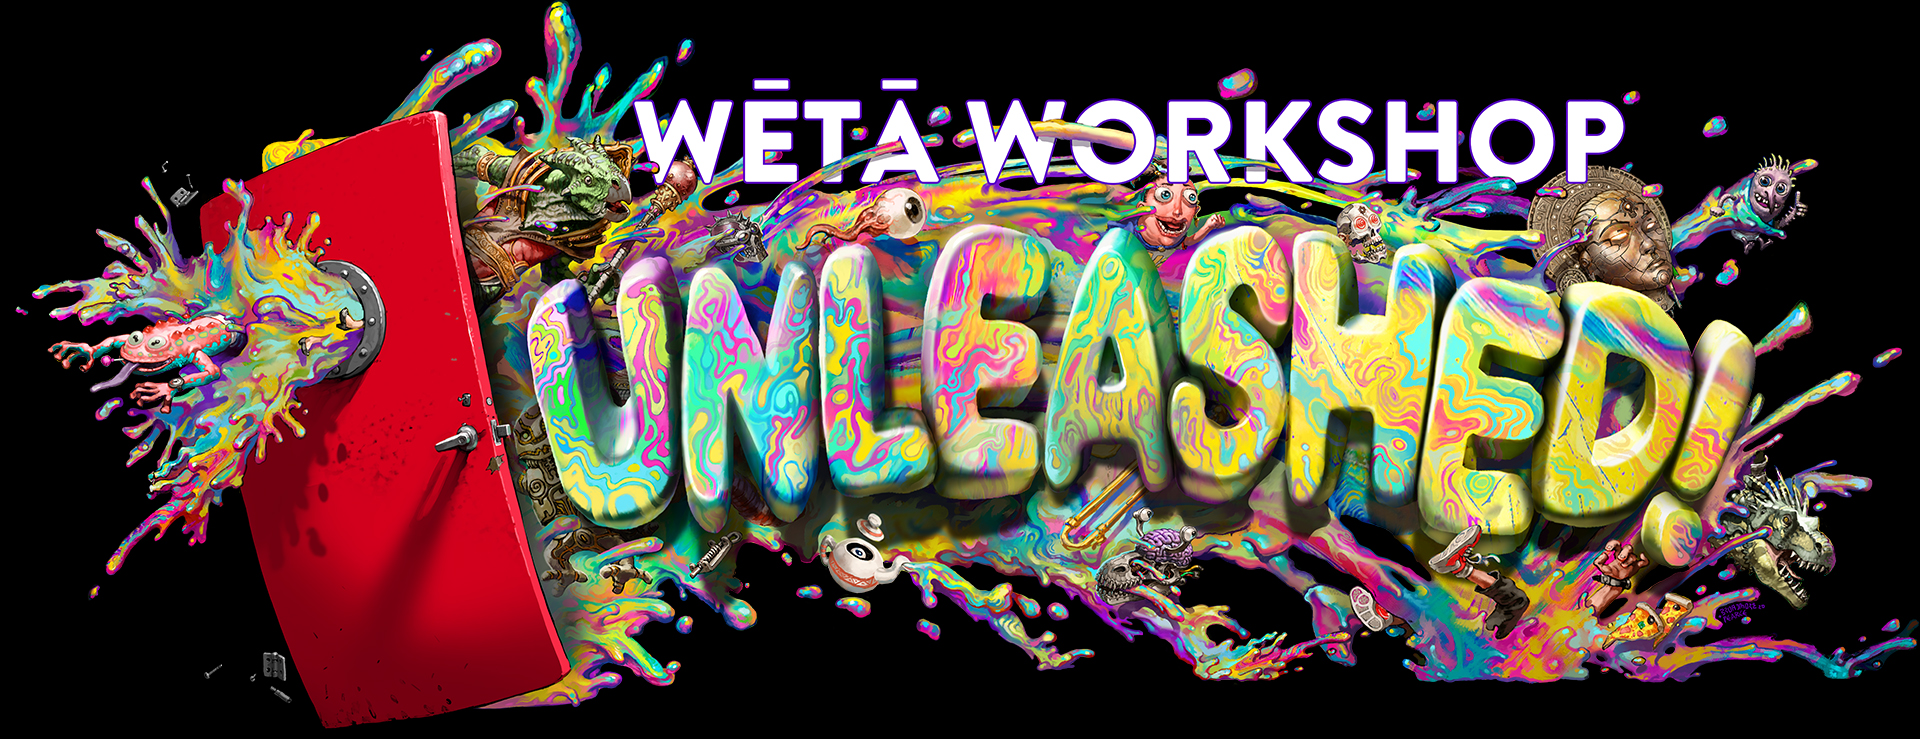 
Weta Workshop Unleashed Auckland